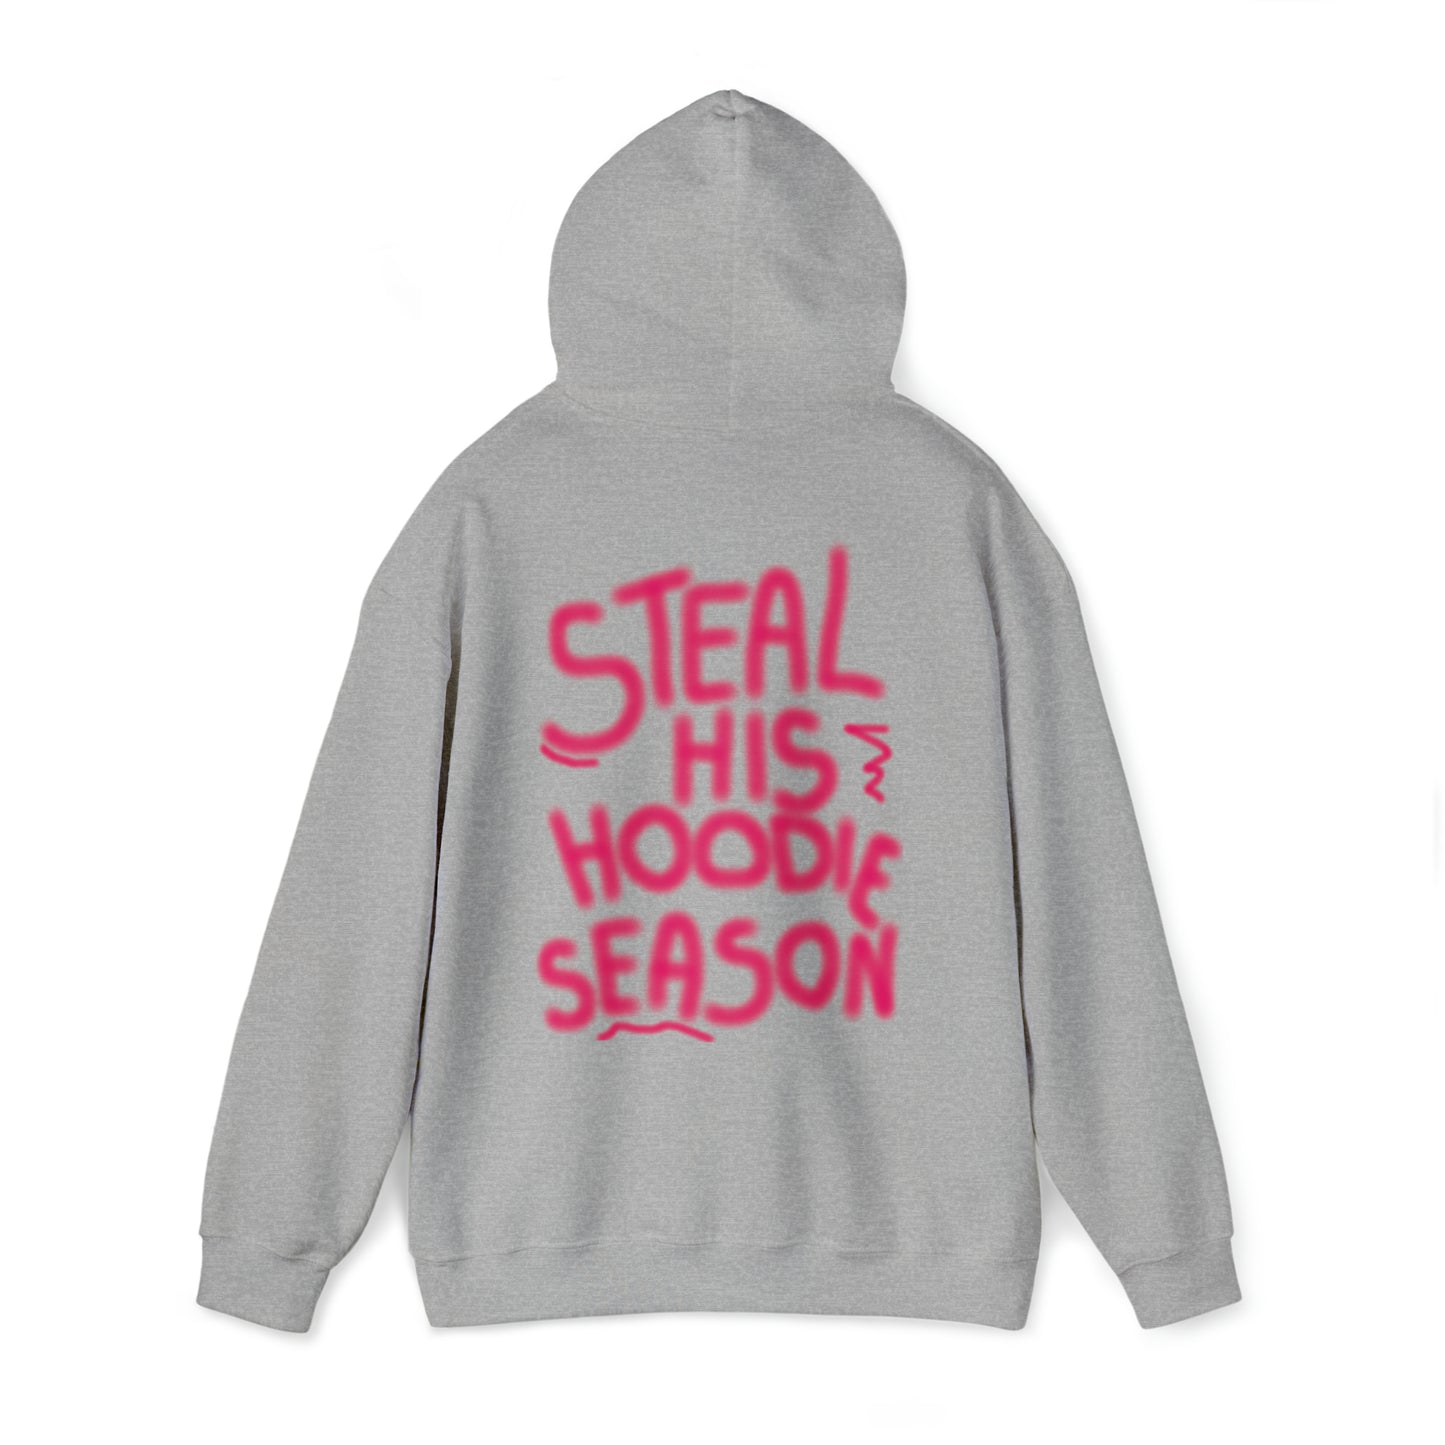 Steal his hoodie season